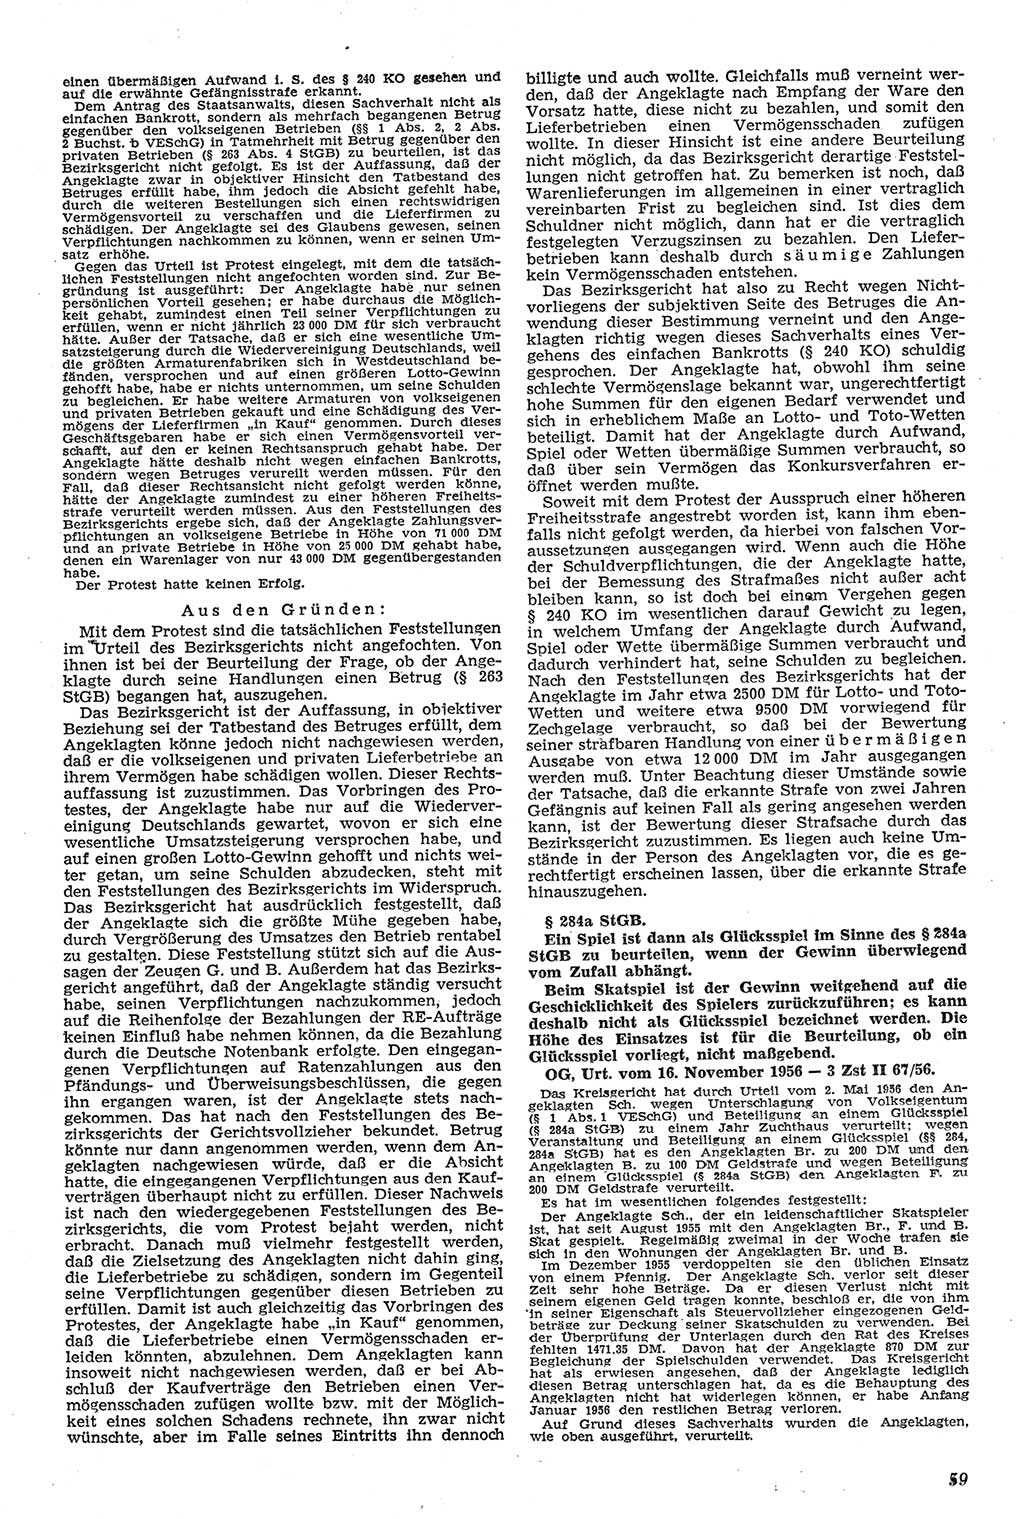 Neue Justiz (NJ), Zeitschrift für Recht und Rechtswissenschaft [Deutsche Demokratische Republik (DDR)], 11. Jahrgang 1957, Seite 59 (NJ DDR 1957, S. 59)